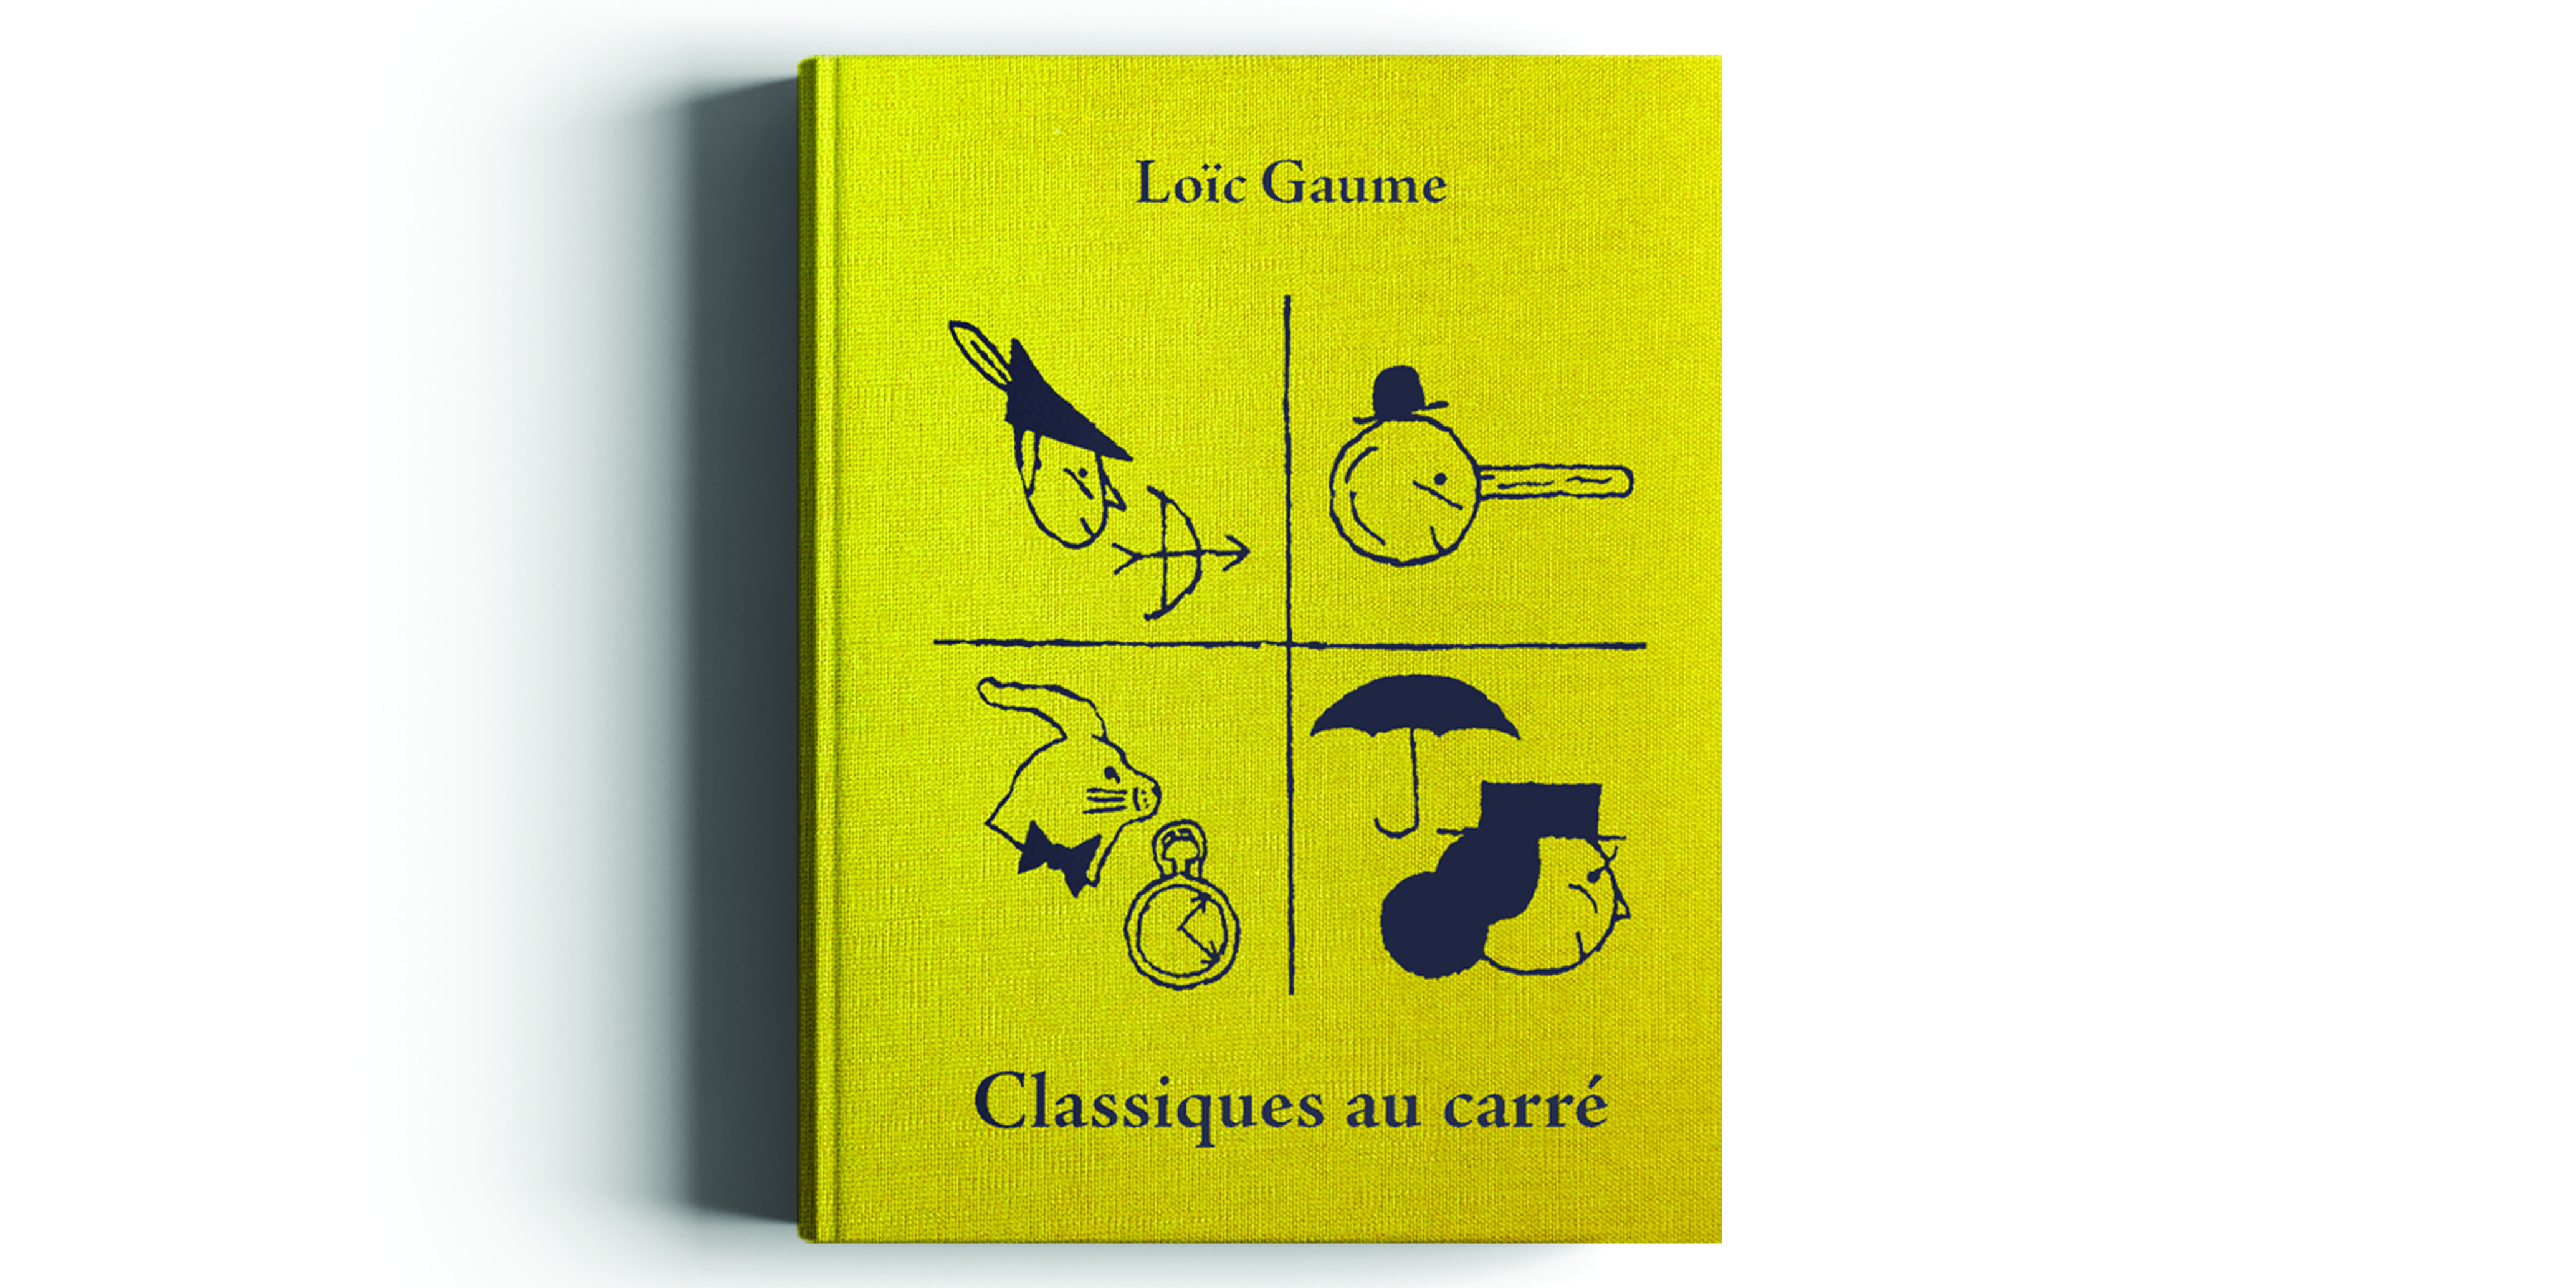 Rencontre littéraire : Loïc Gaume & les éditions Thierry Magnier